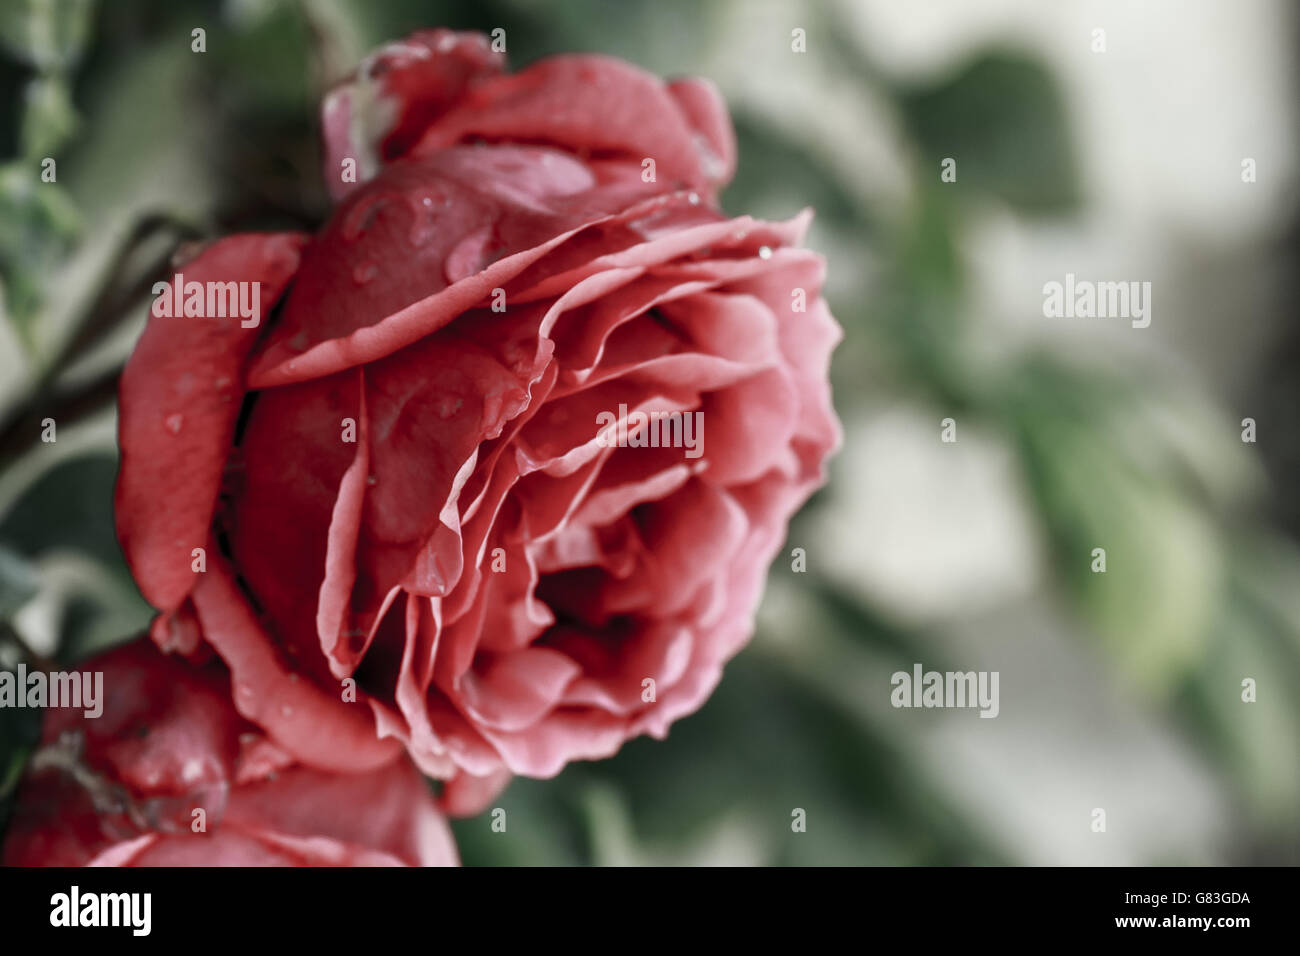 Traurige Rose Stockfotos und -bilder Kaufen - Alamy